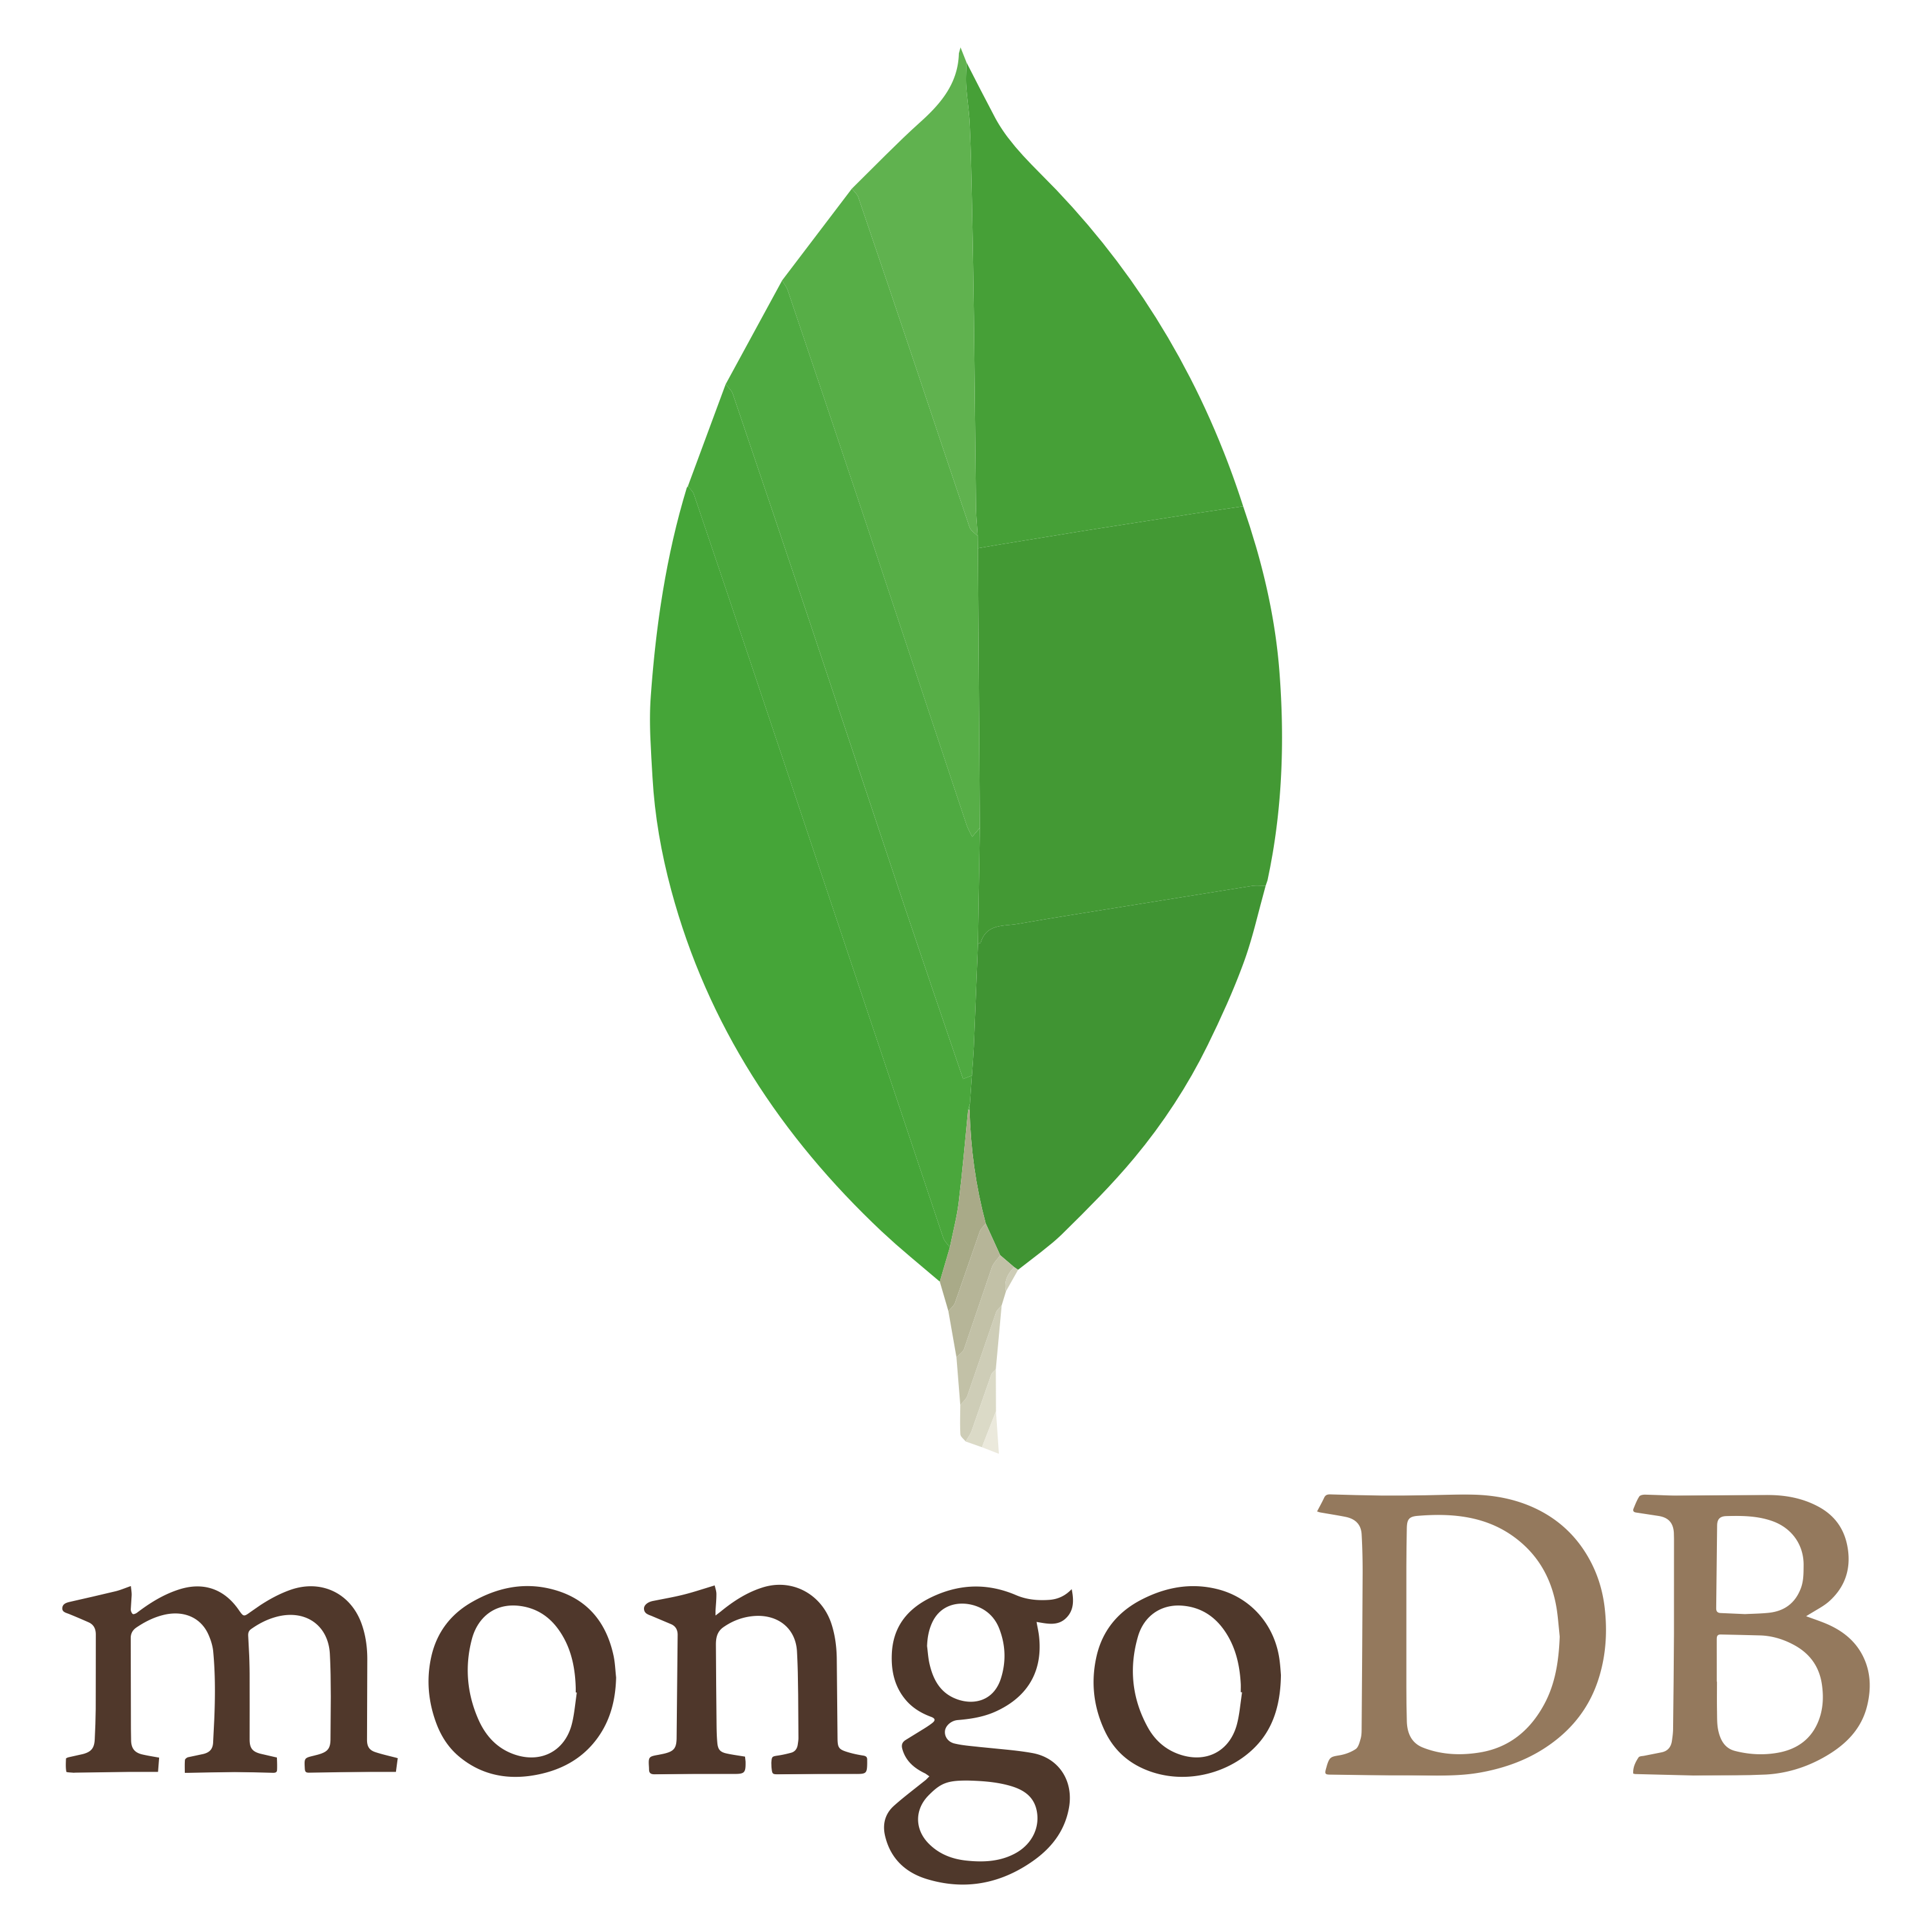 Mongo DB Logo